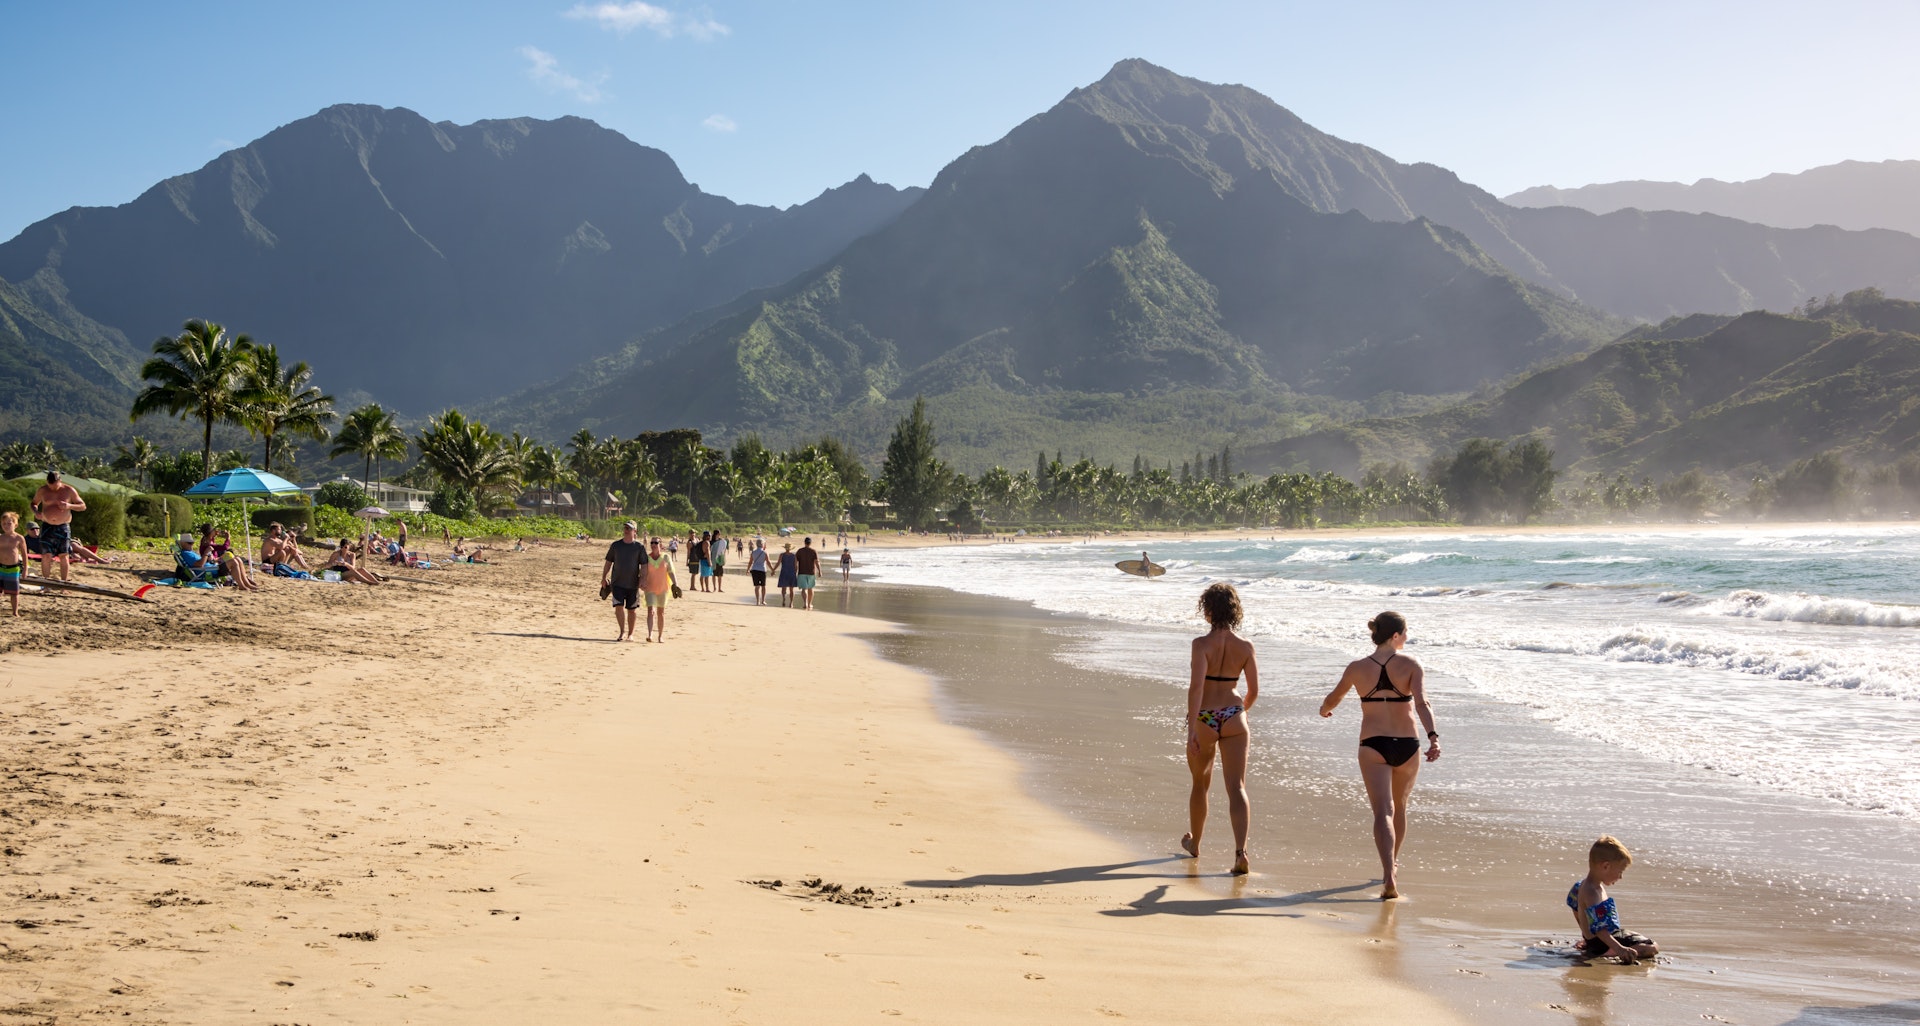  La 9 plej bonaj strandoj en Kauai, Havajo